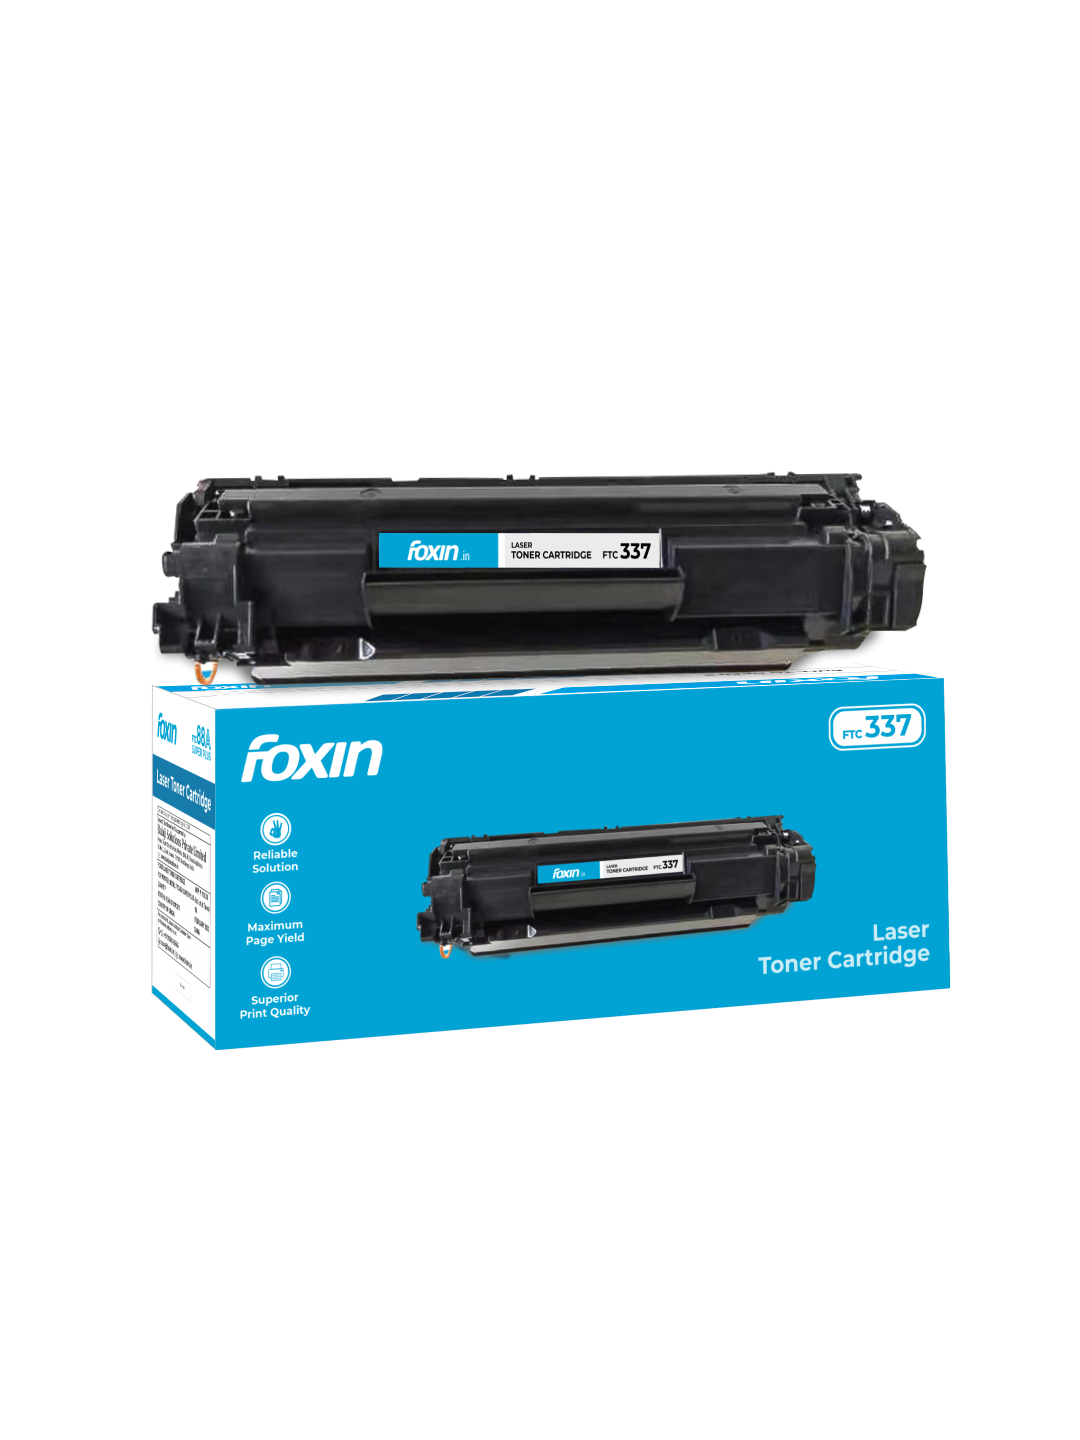 Foxin FTC 337 - Laser Cartridges for MF227dw / MF211 / MF216n / MF247dw / LBP151dw 